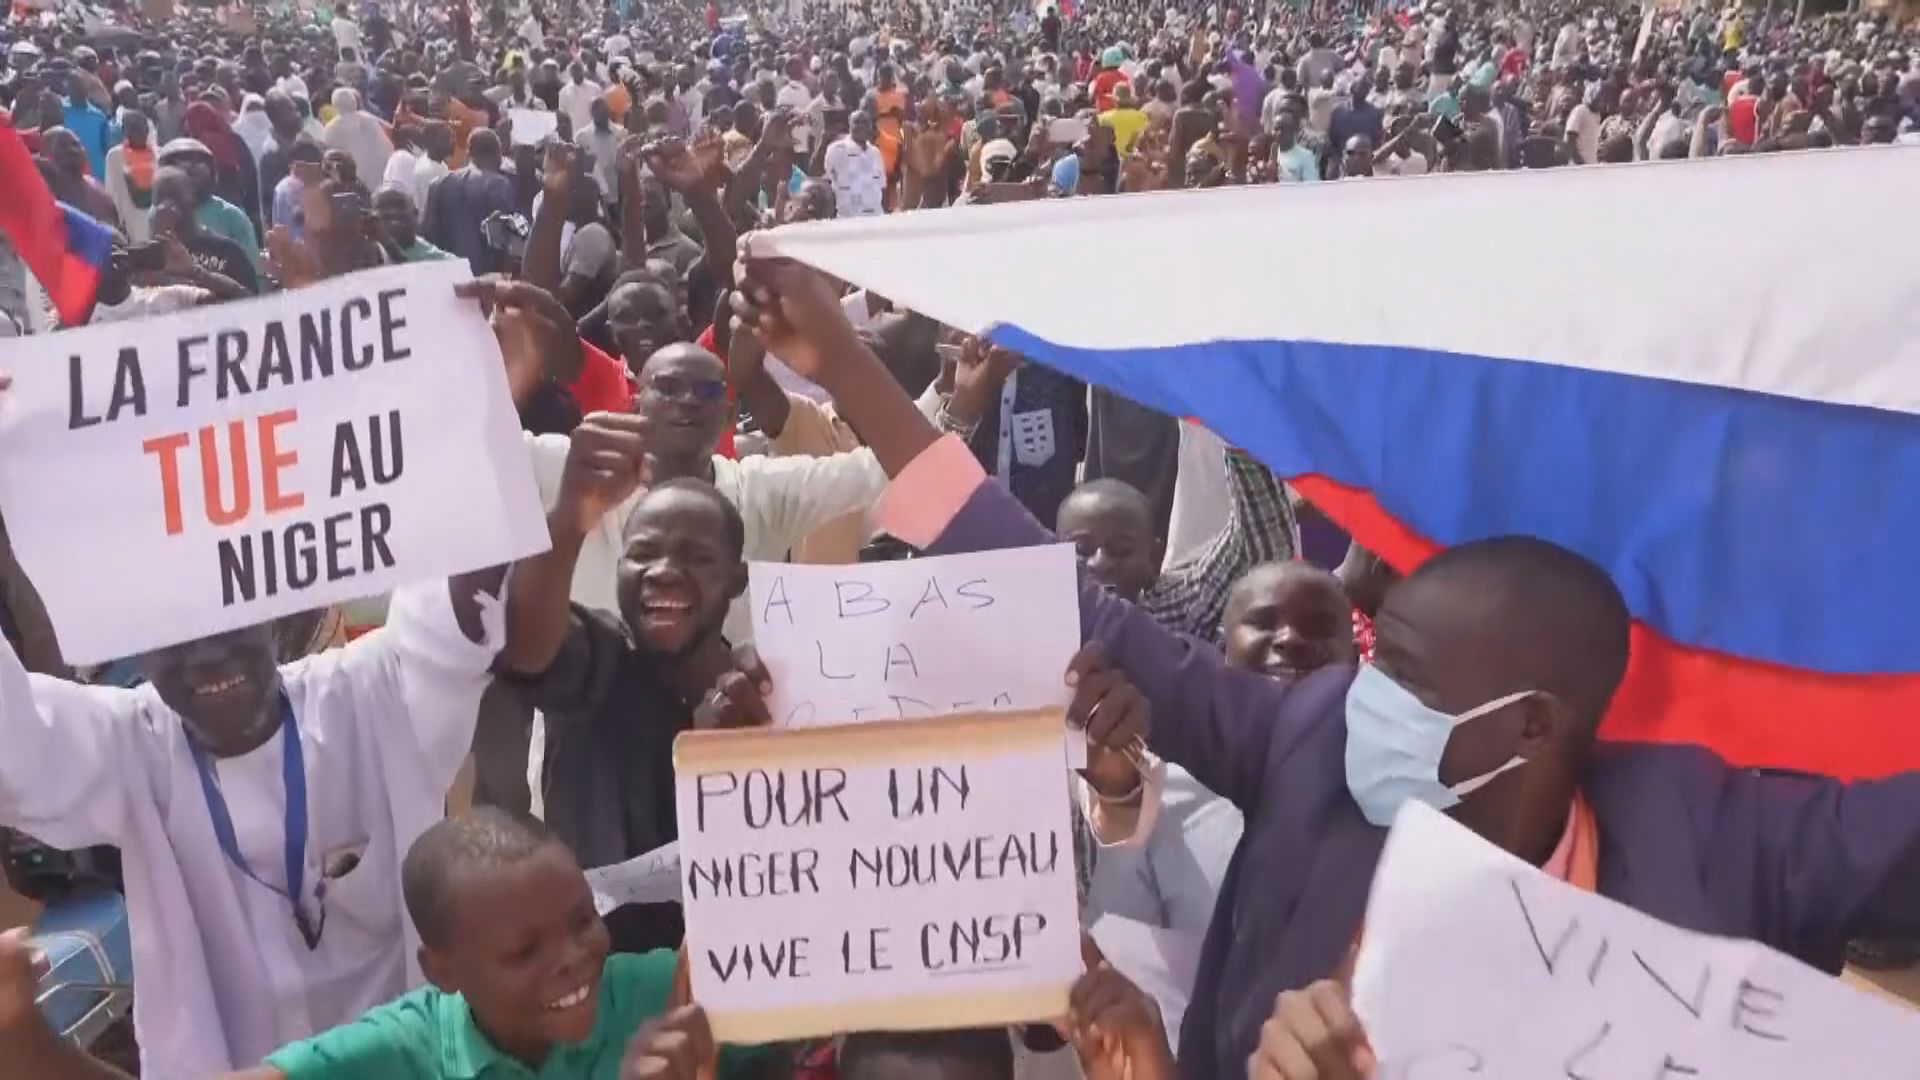 尼日爾軍方支持者上街抗議法國暫停援助